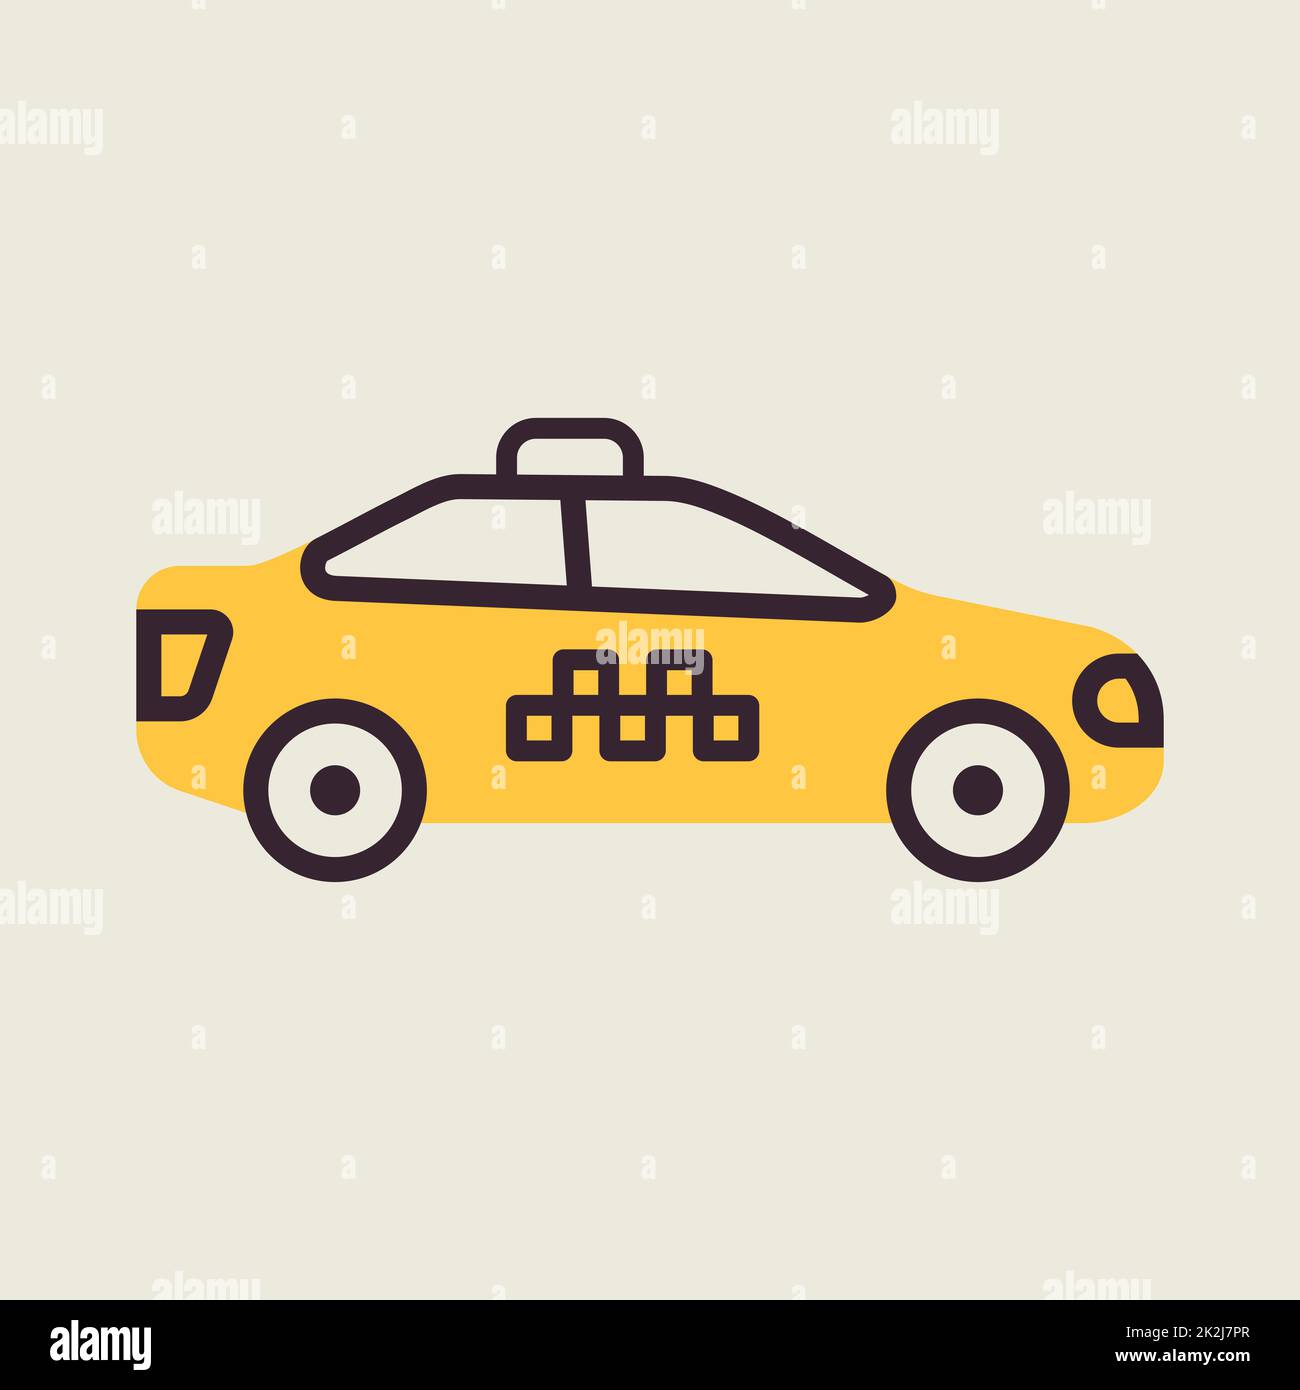 Taxi car flat vector icon Stock Photo